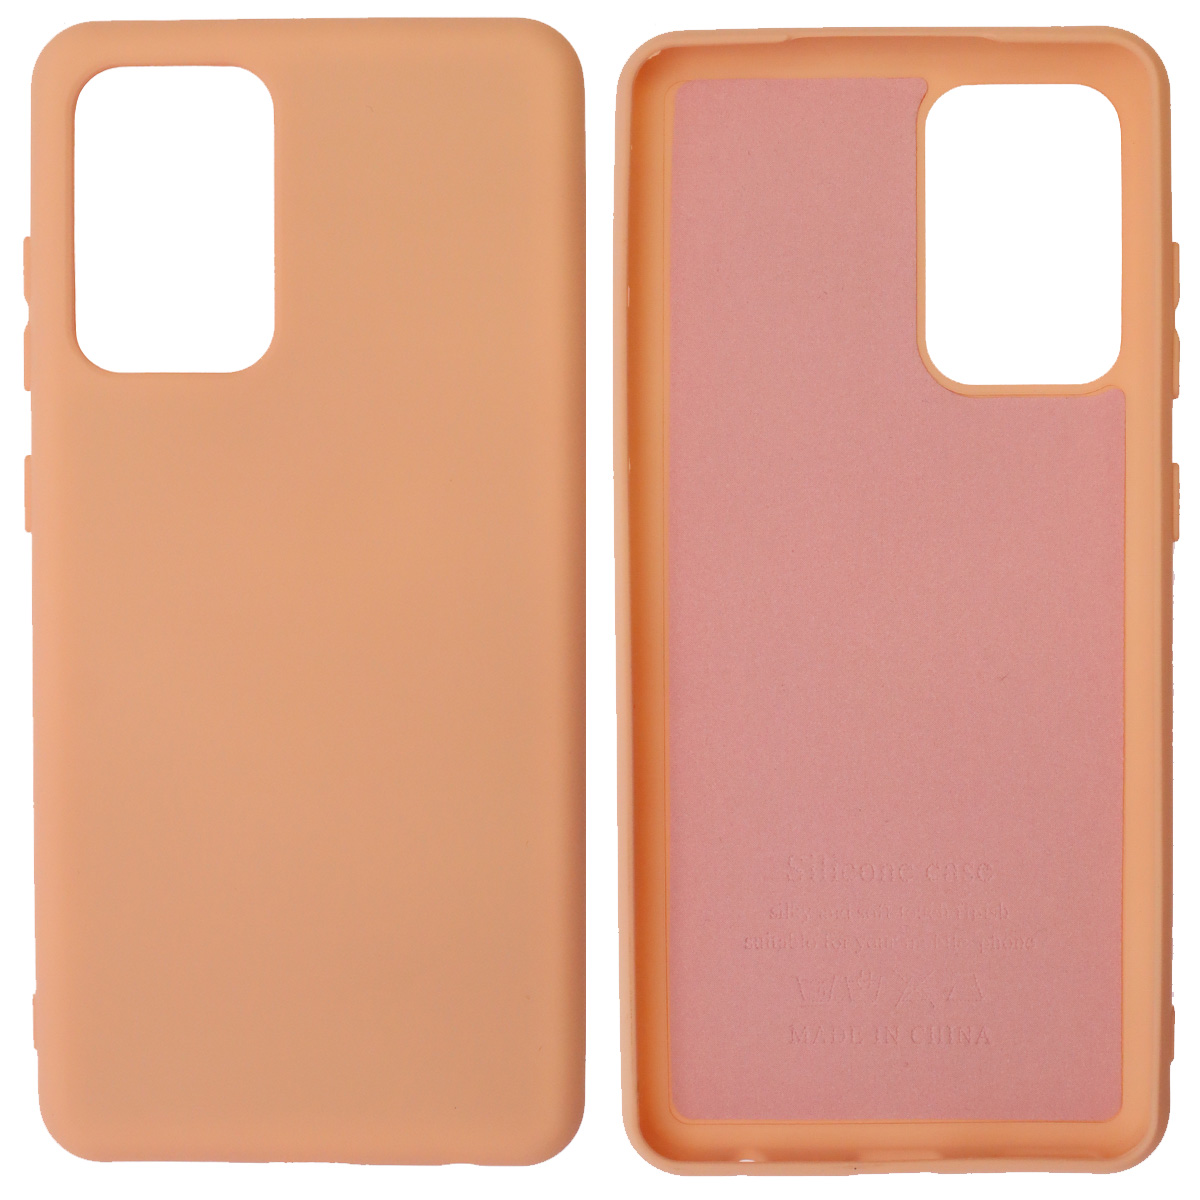 Чехол накладка Silicon Сover для SAMSUNG Galaxy A52 (SM-A525F), силикон, бархат, цвет розовый песок